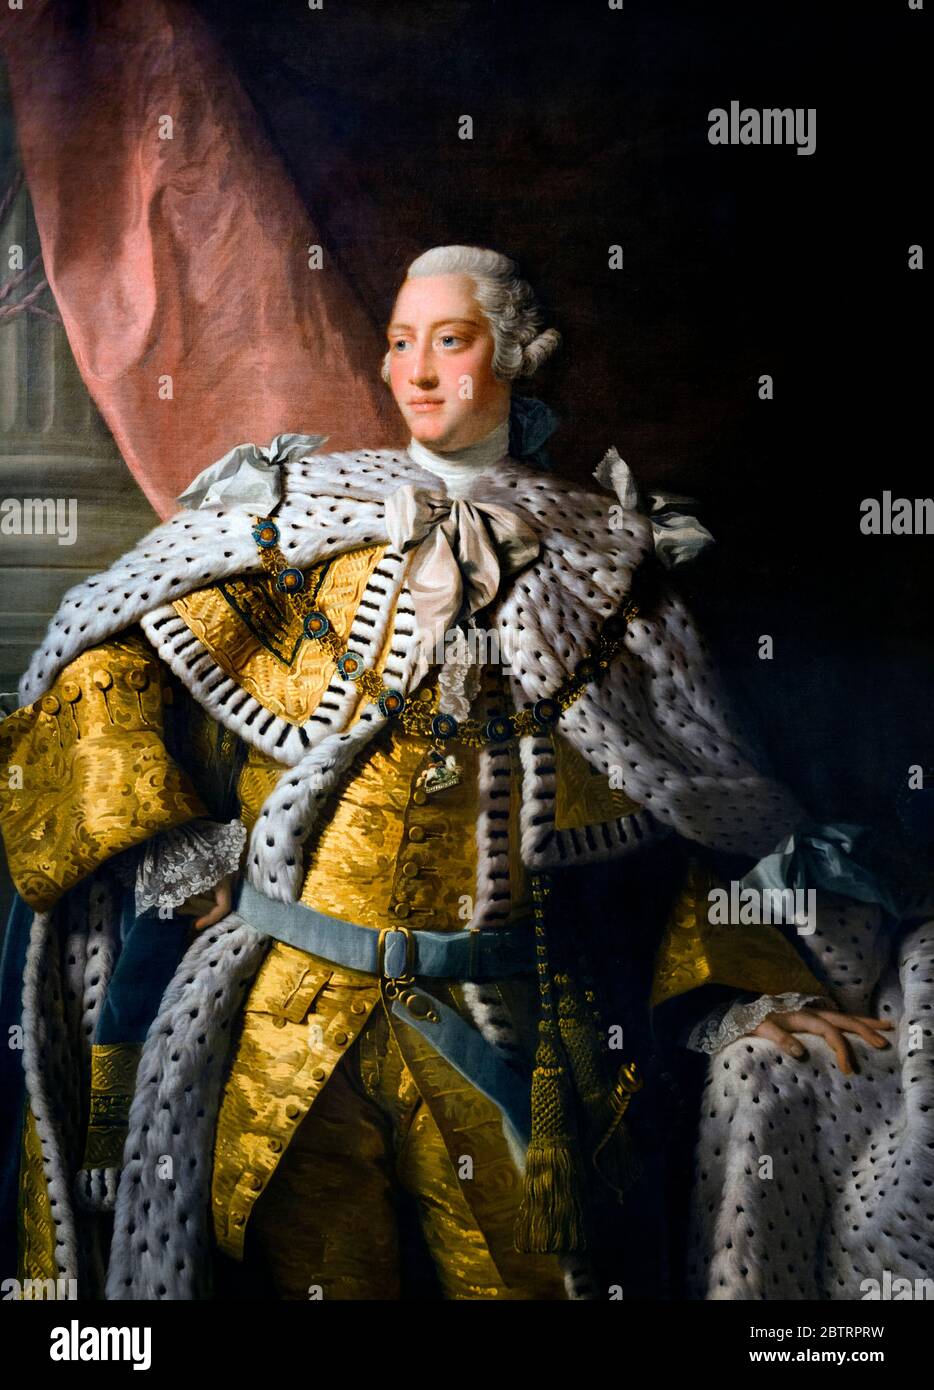 George III (1738-1820).Portrait du roi George III en robes de Coronation, peinture par Allan Ramsay (1713-1784) et studio, huile sur toile, vers 1761-62 Banque D'Images